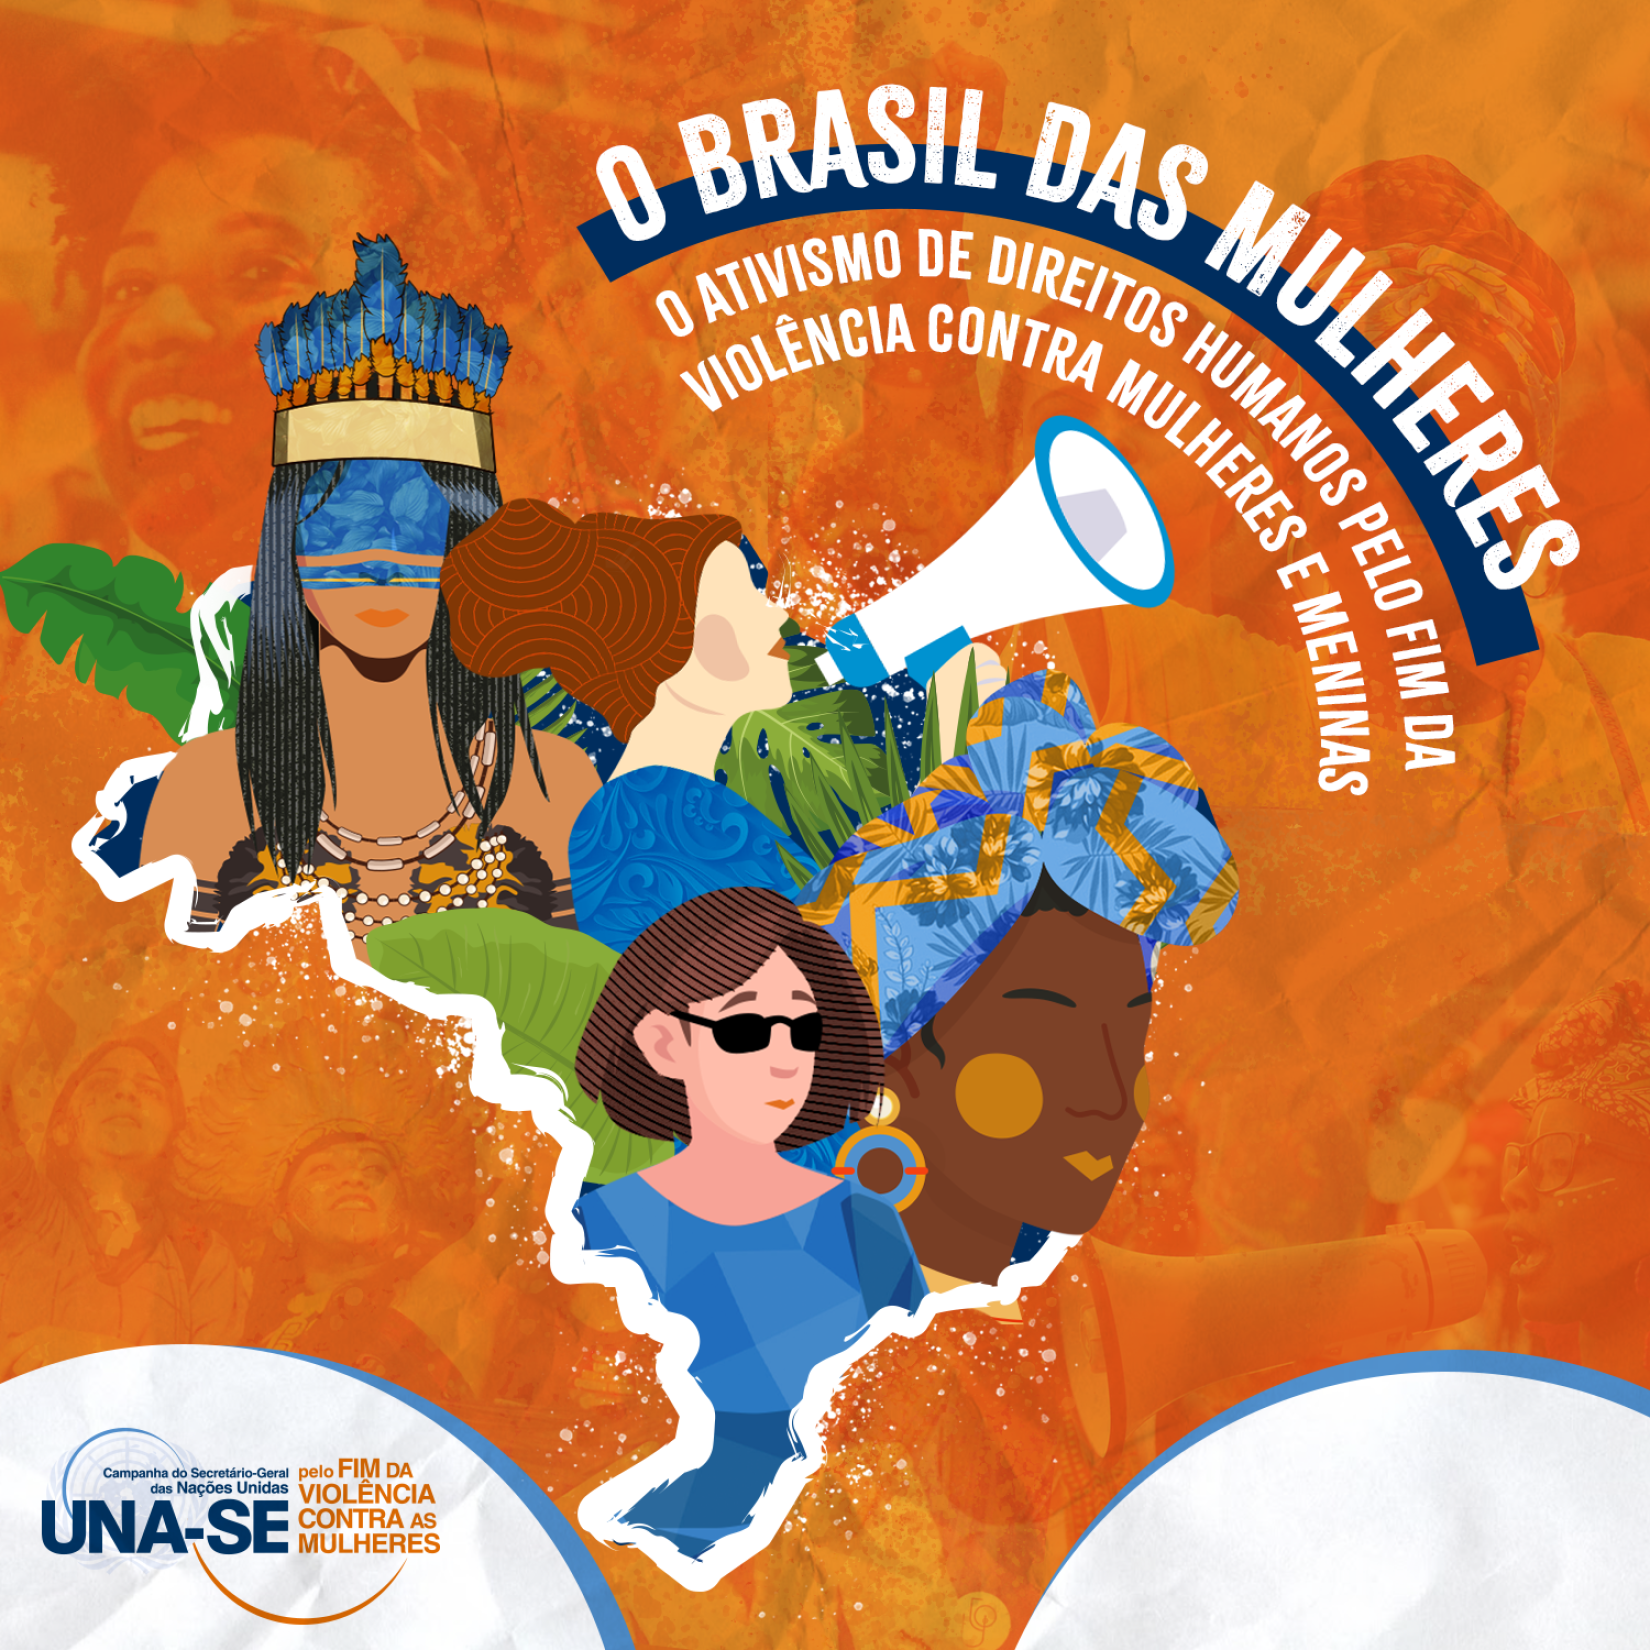  Material de divulgação da campanha “UNA-SE! O Brasil das Mulheres – o ativismo em direitos humanos pelo fim da violência contra mulheres e meninas".